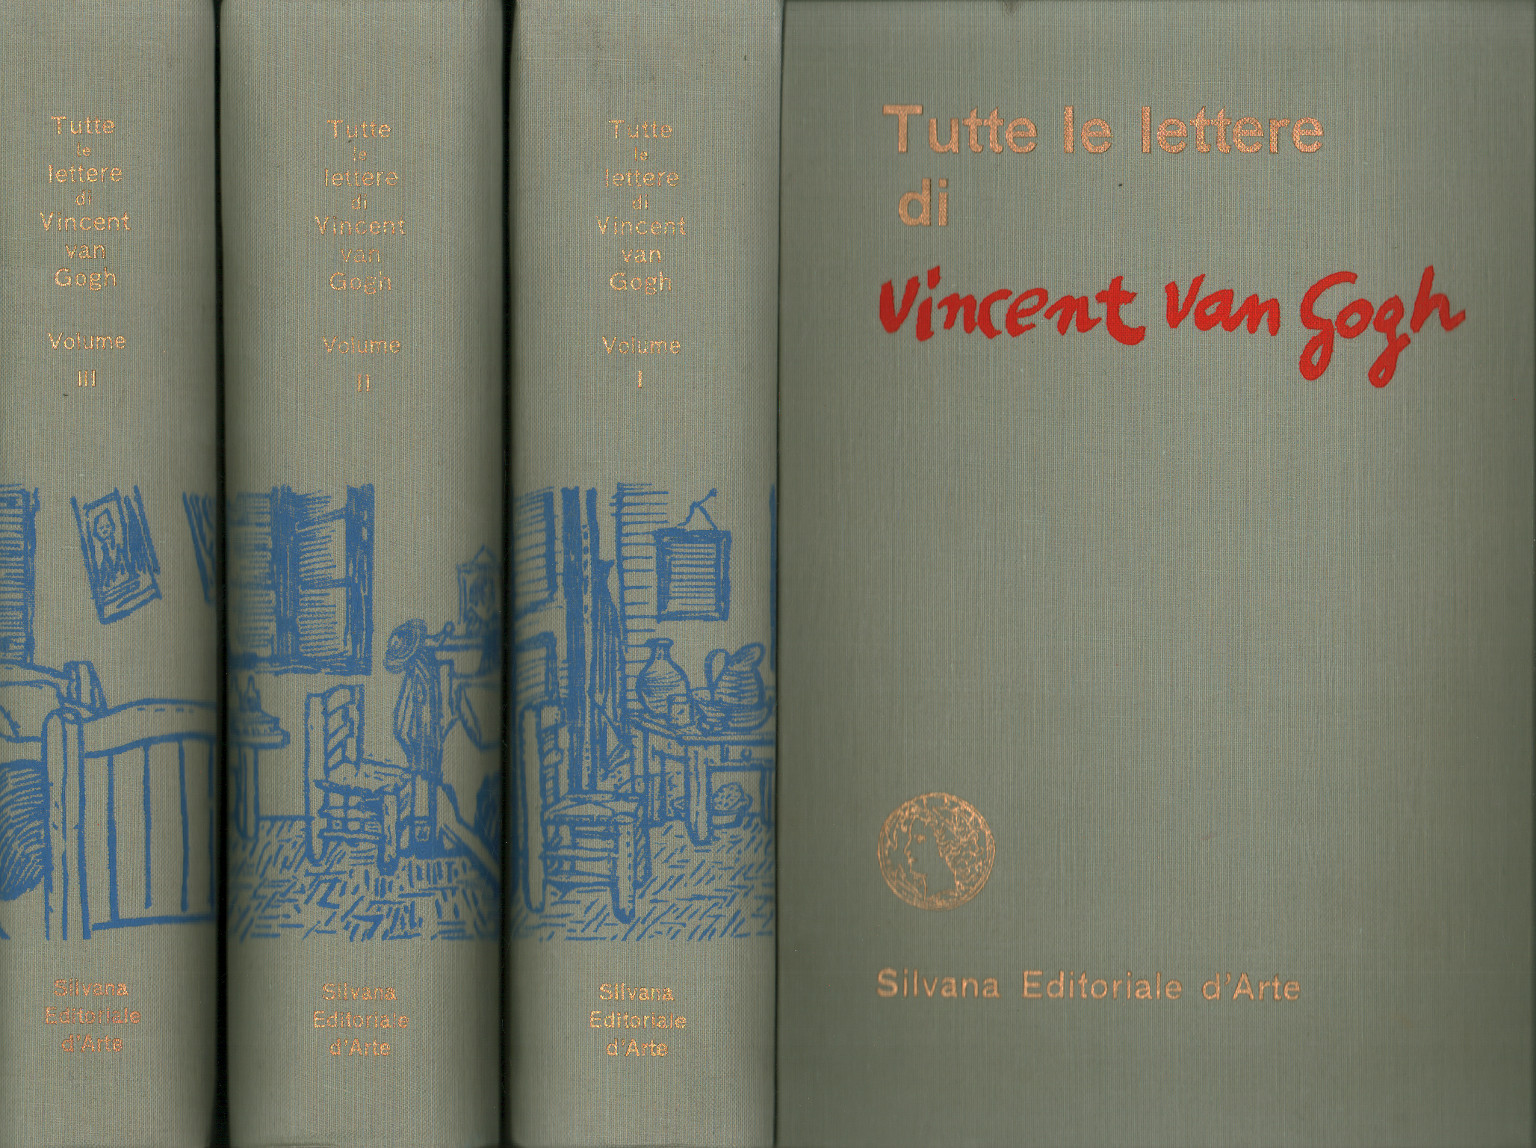 Tutte le lettere di Vincent Van Gogh%2,Tutte le lettere di Vincent Van Gogh%2